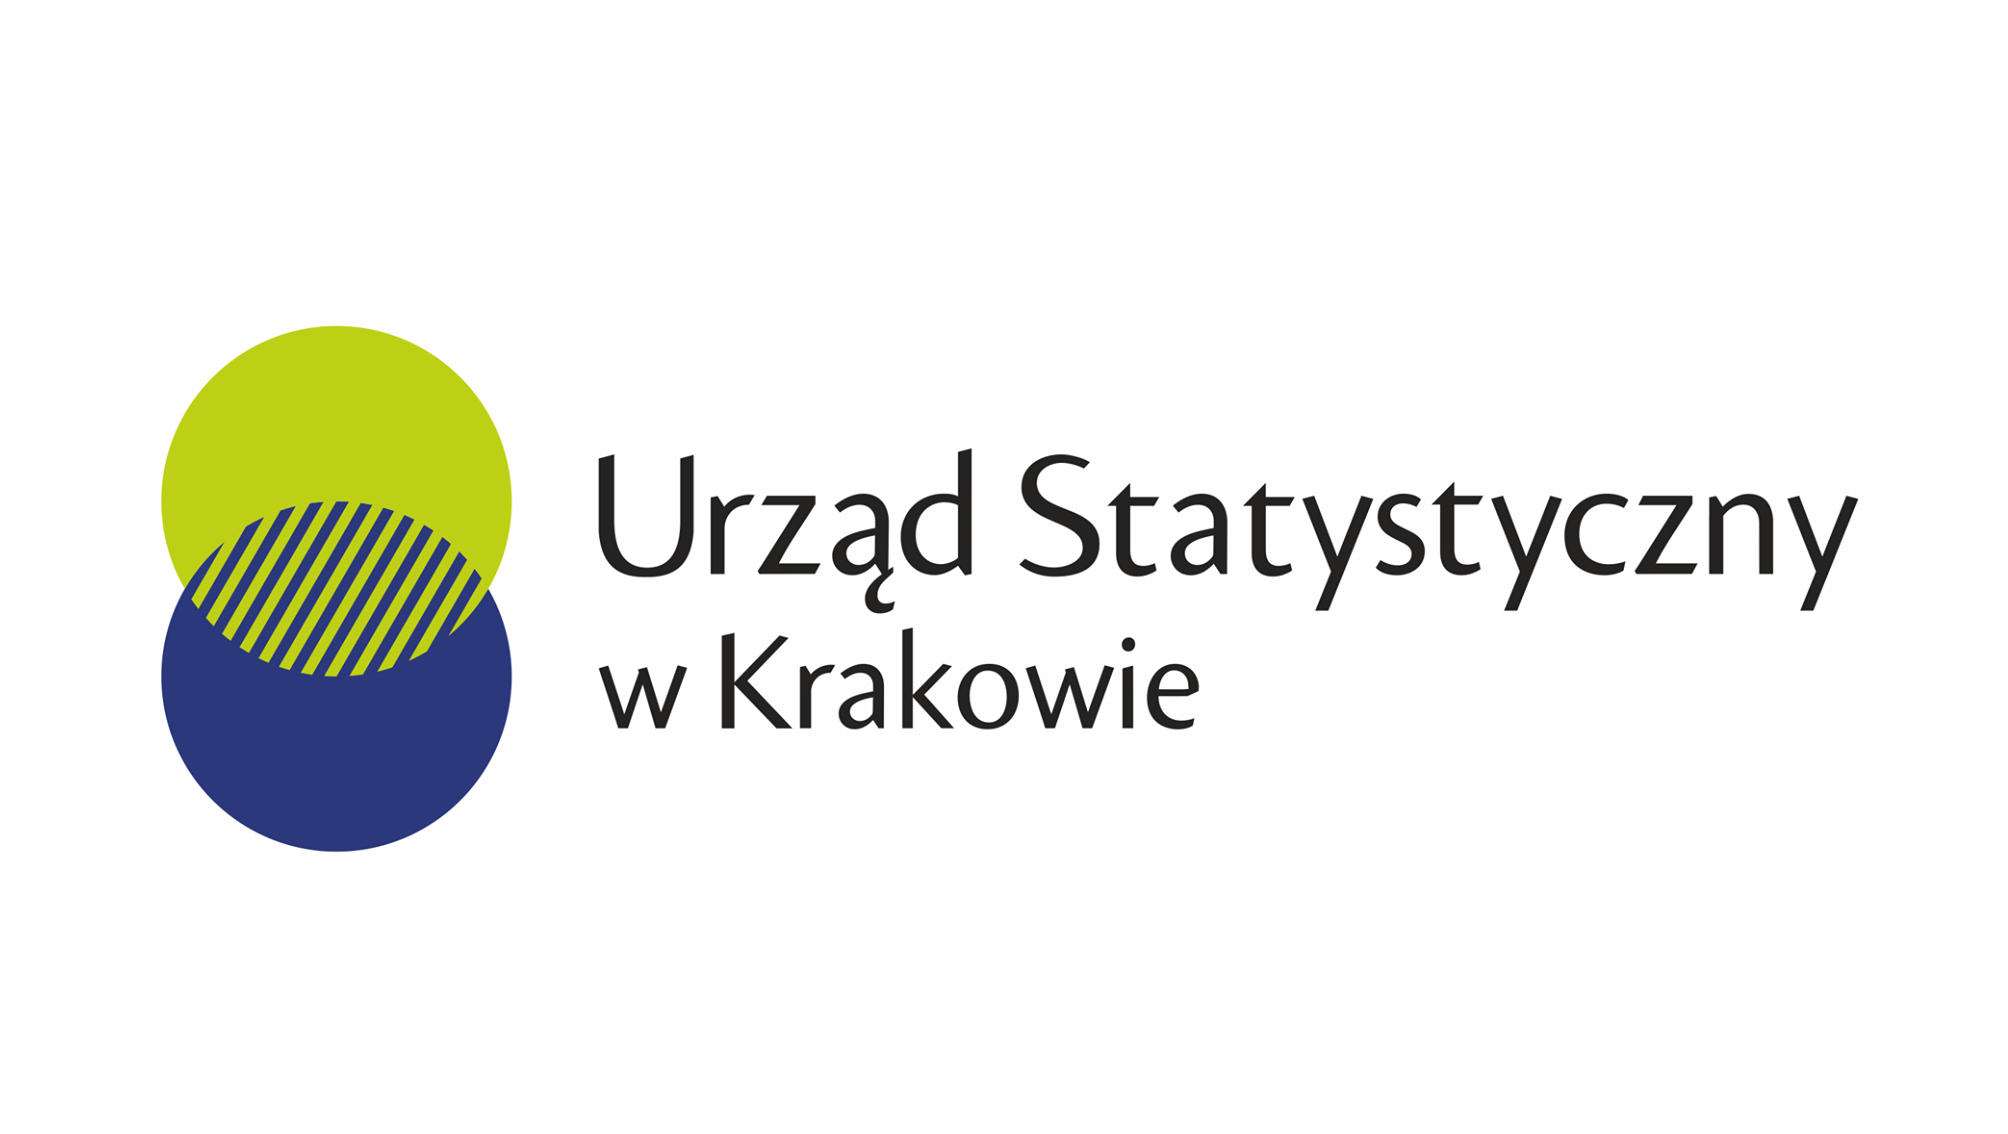 Ogłoszenie o wolnym stanowisku pracy - Urząd Statystyczny w Krakowie